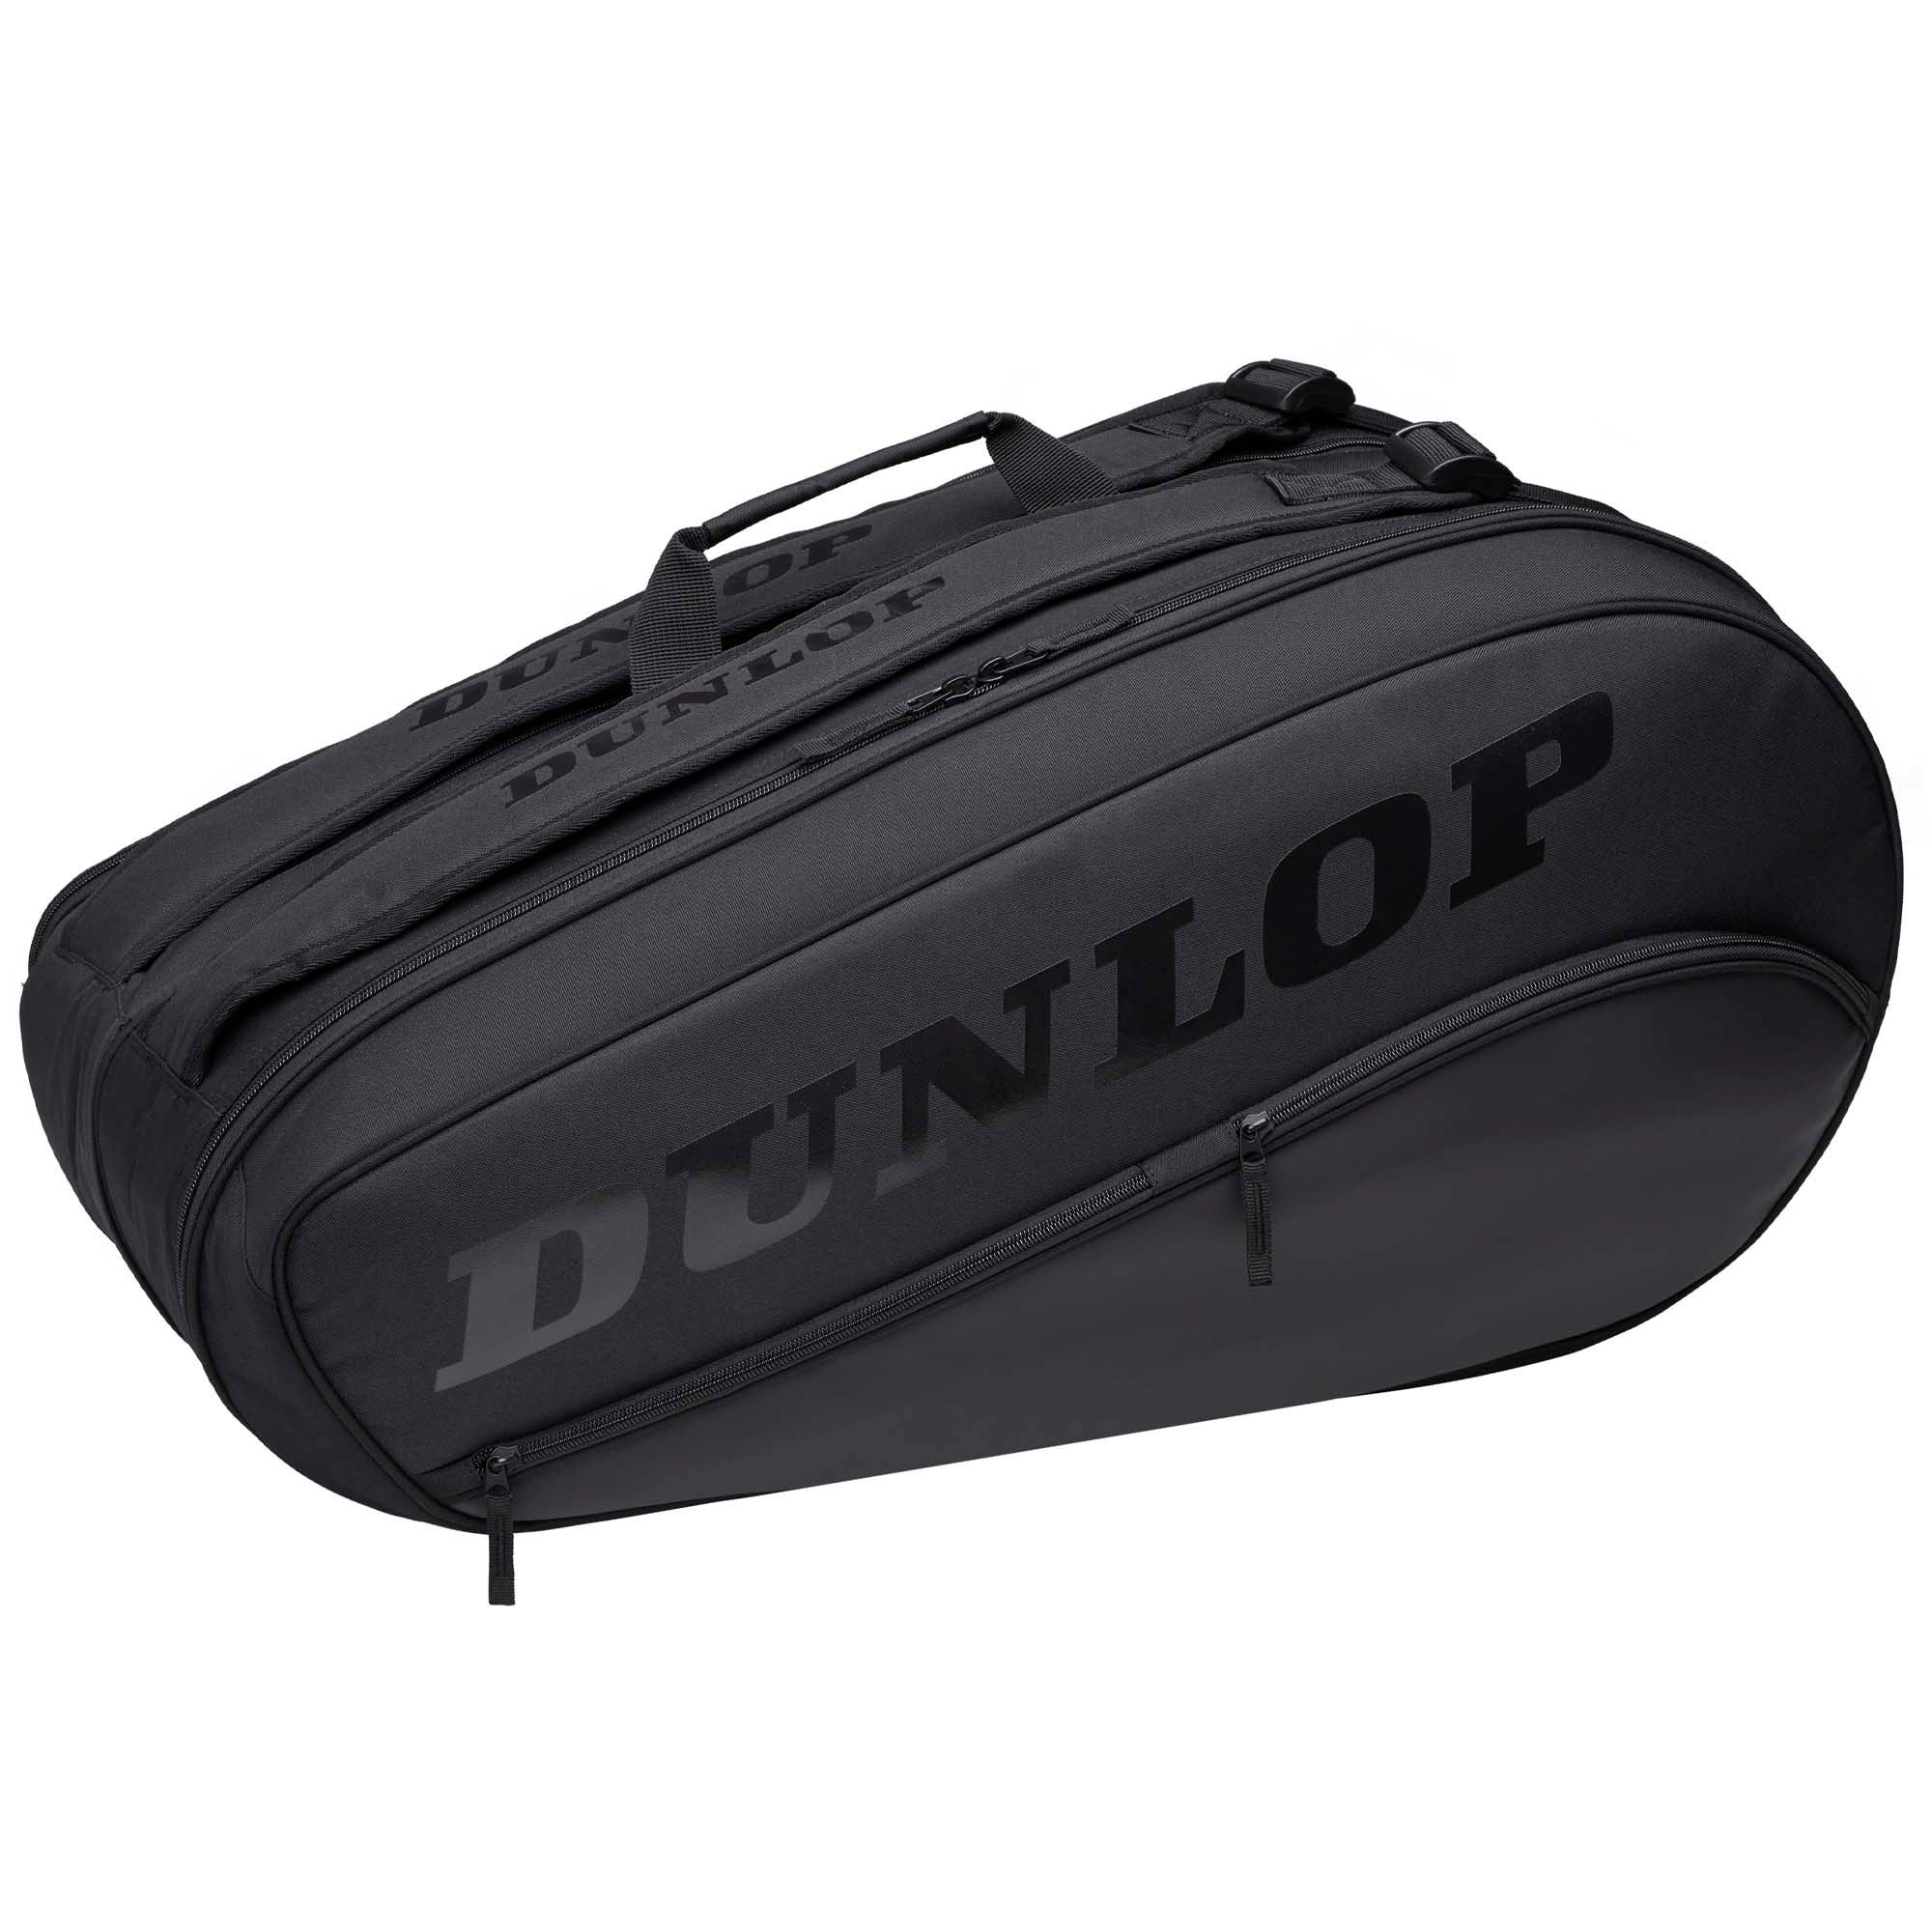 Dunlop Team 8 Racket Bag